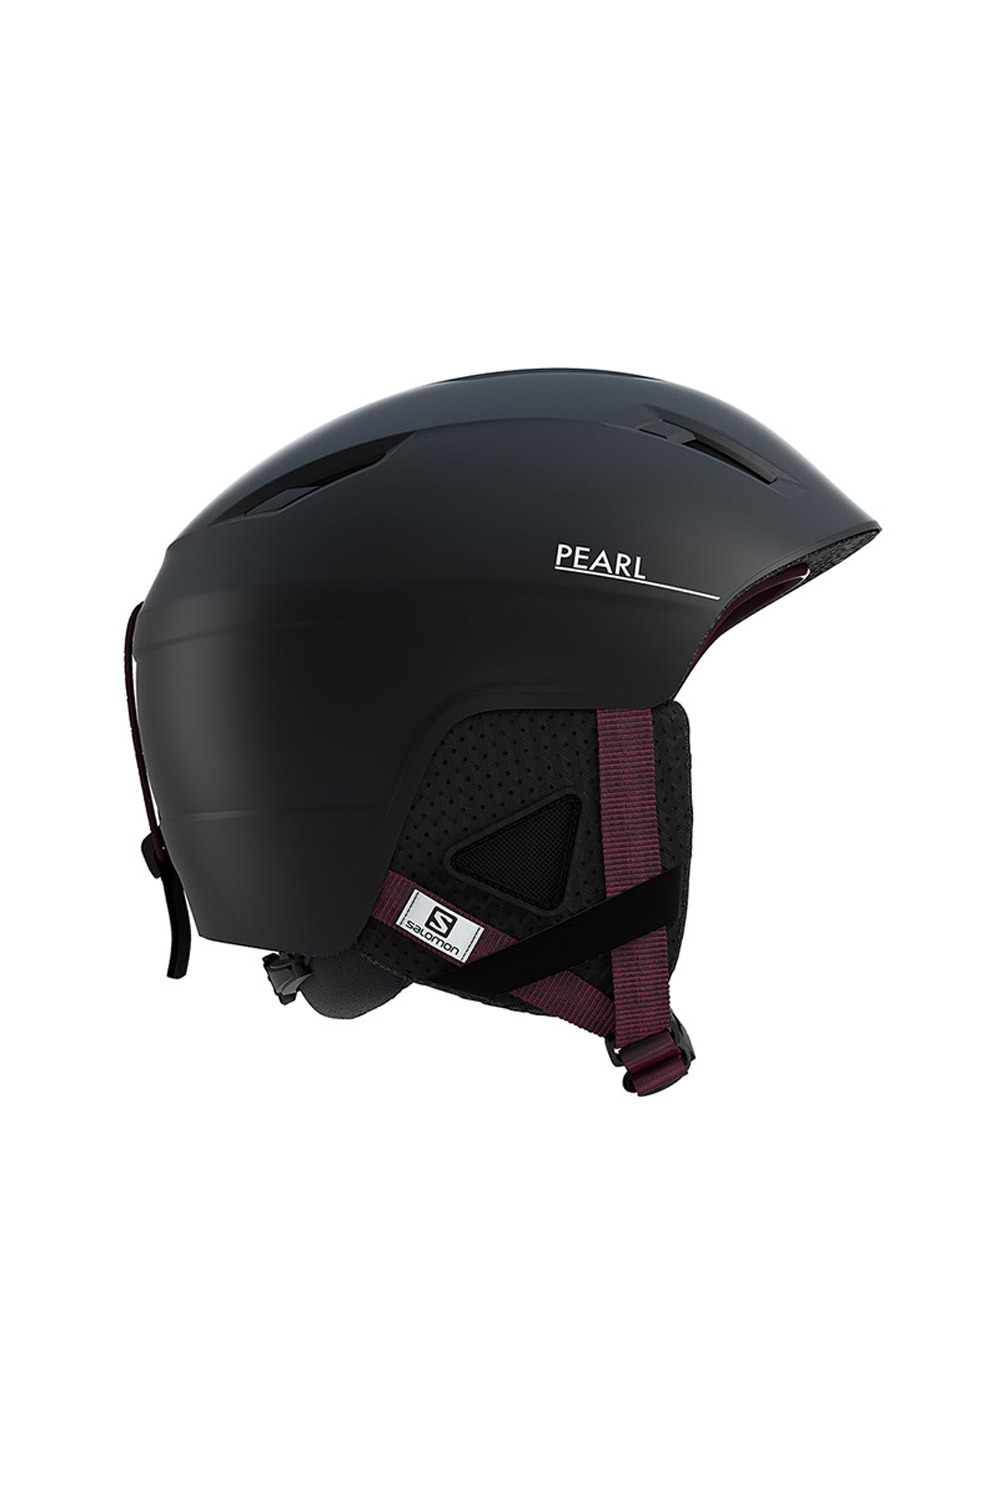 살로몬 여성 헬멧 펄2+  SALOMON(L40600800)PEARL2+_BLACK_커스텀 다이얼 시스템_DFSA916BK_ 